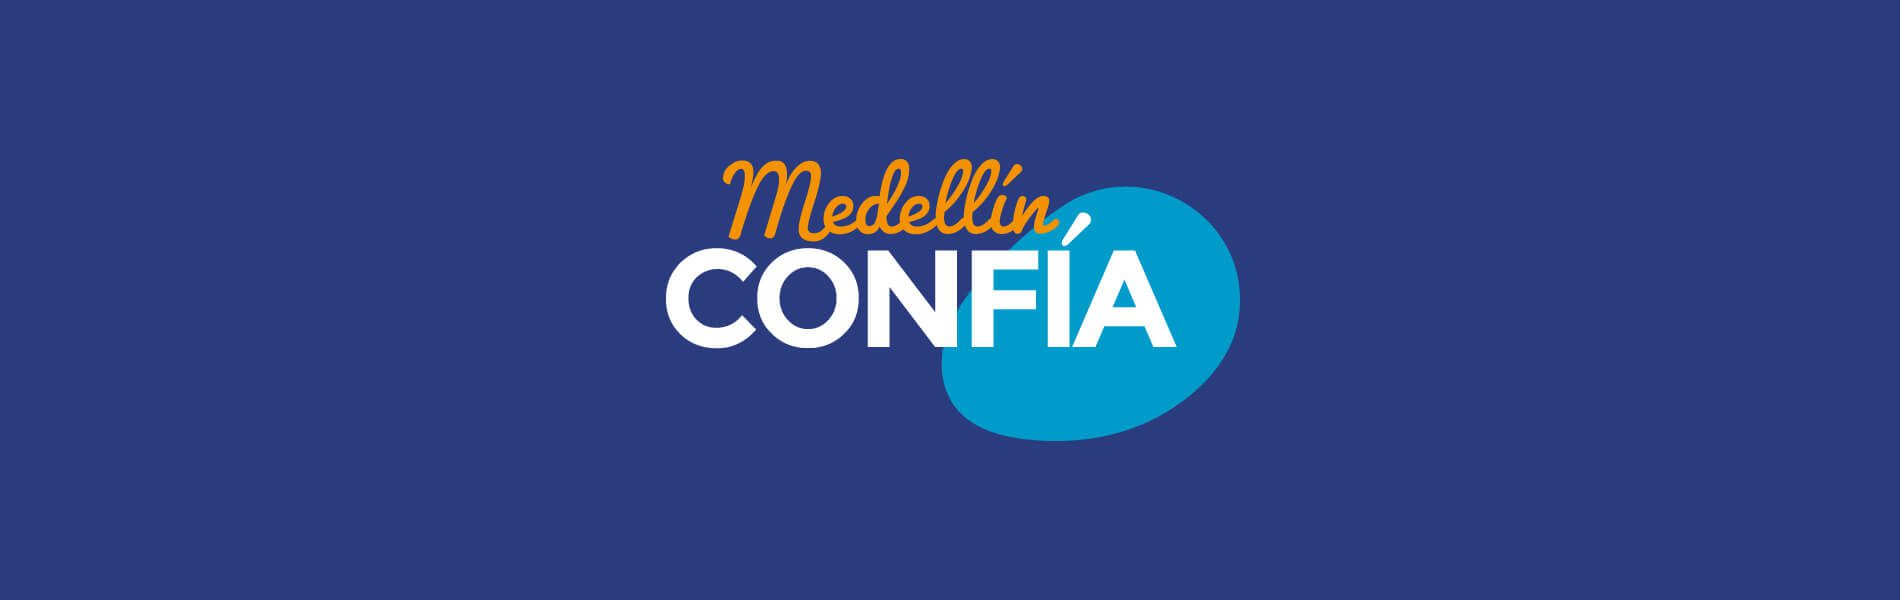 Banner Medellín Confía